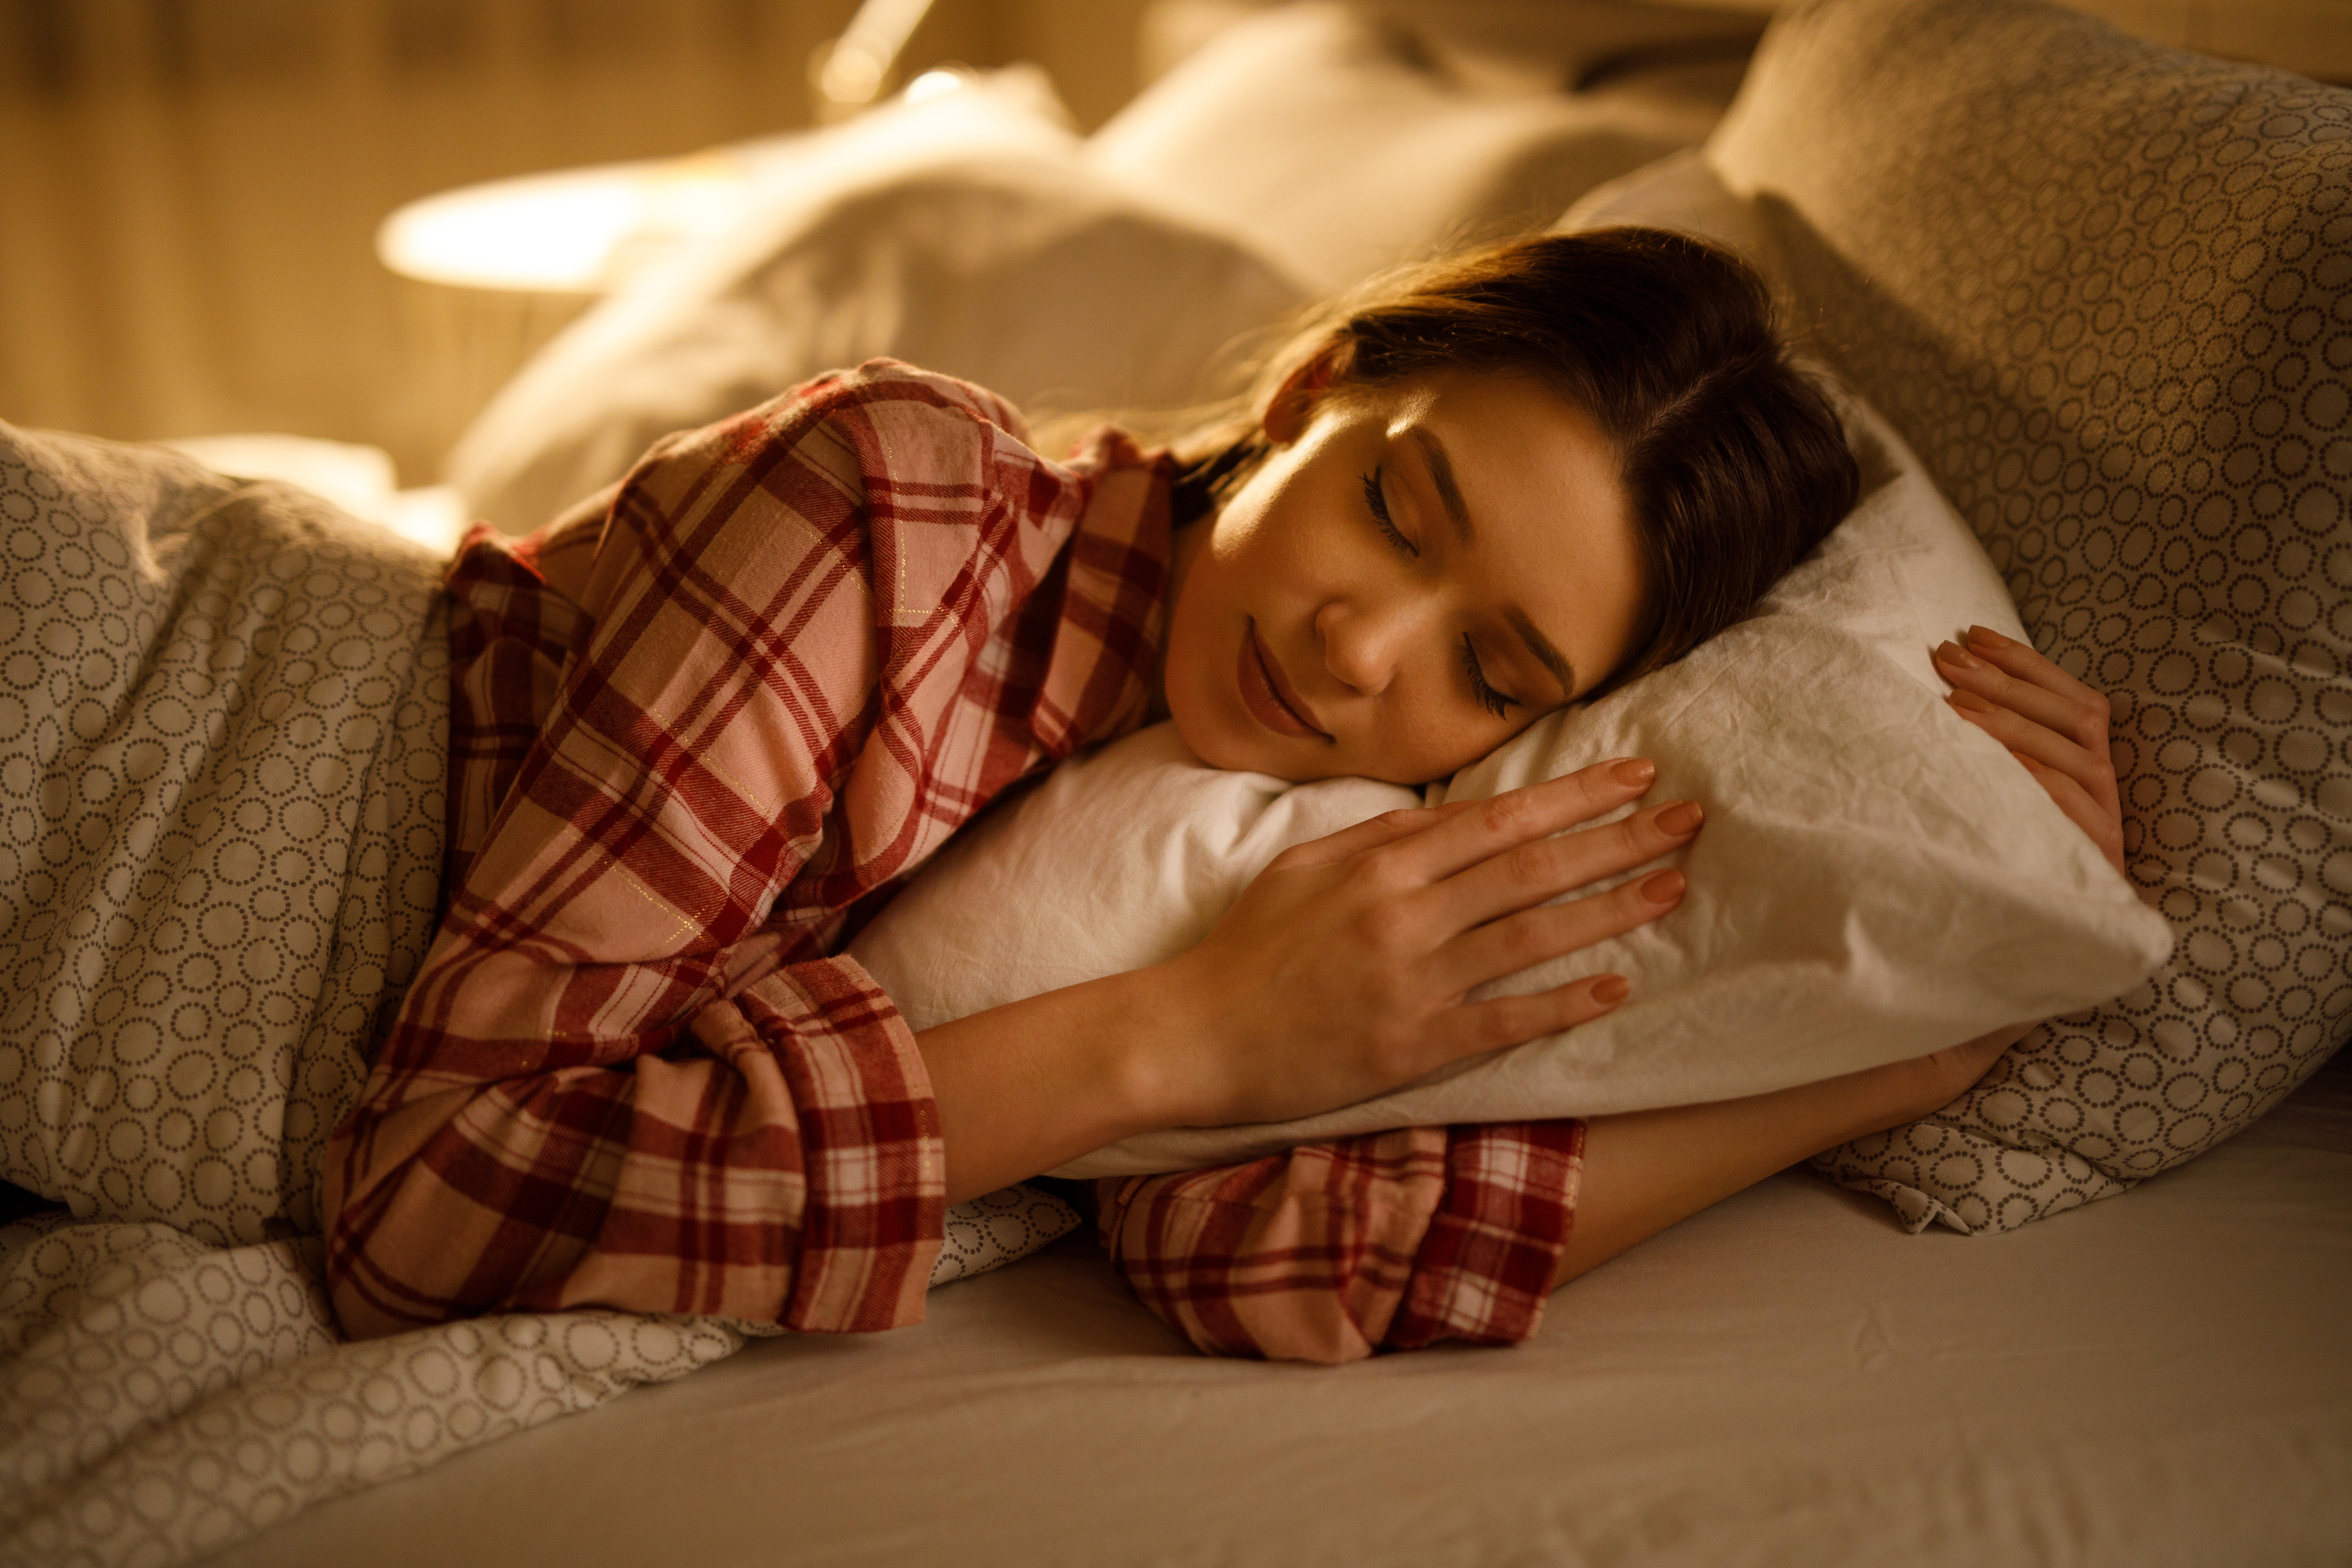 <p>Постоянен и спокоен сън</p>

<p>Сънят е жизненоважна биологична функция. Нощната почивка е също толкова значима за доброто здраве, колкото диетата и упражненията. Качествен сън означава да заспиваме и да се събуждаме по едно и също време.</p>